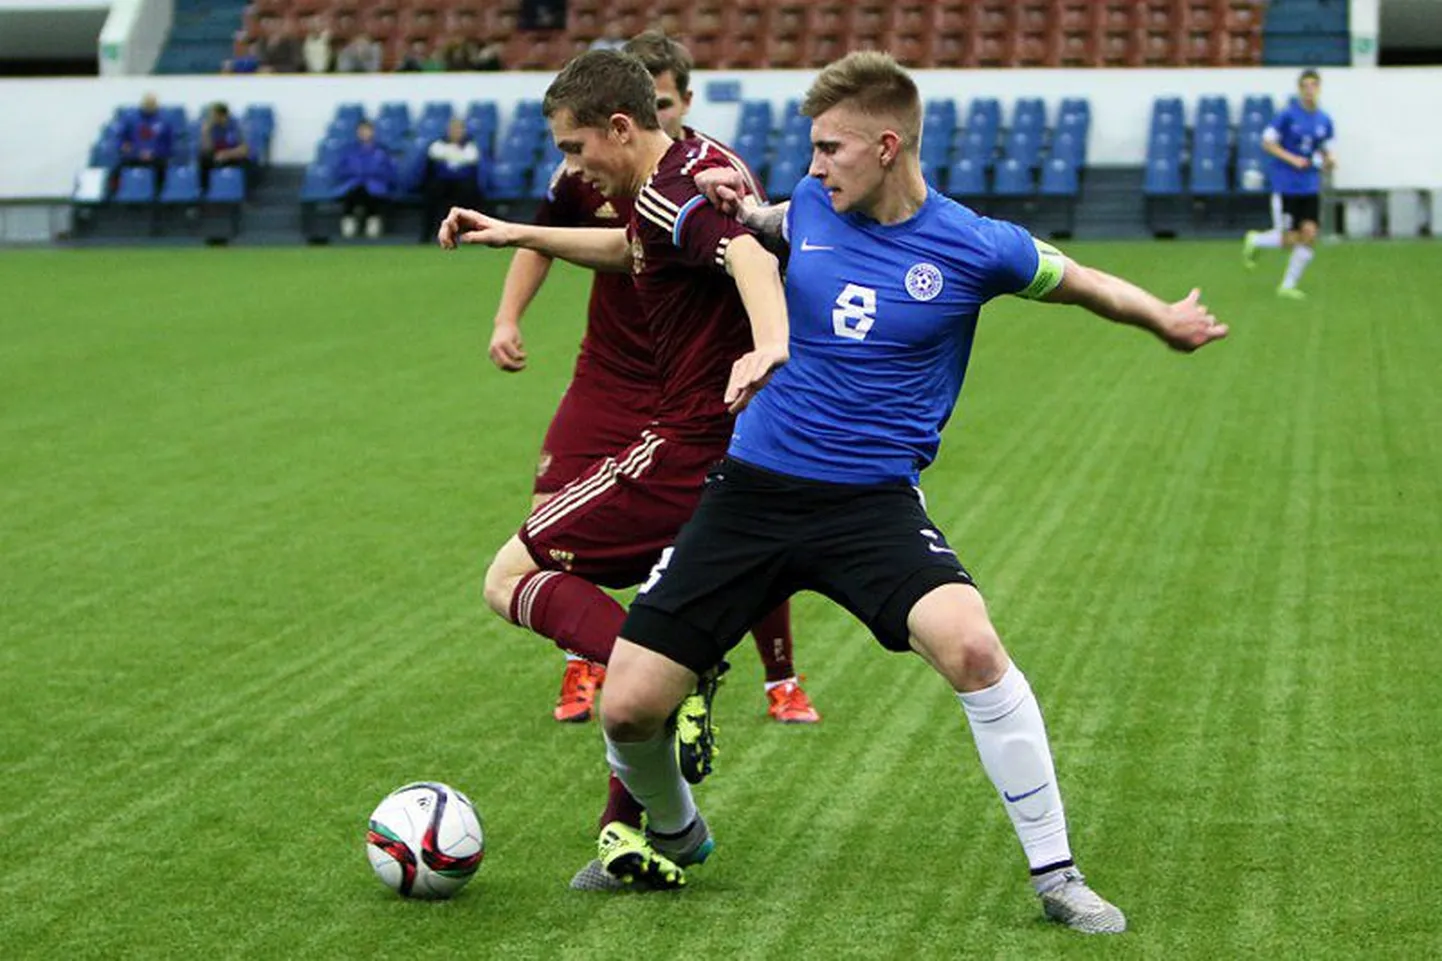 Момент матча с участием сборной Эстонии на турнире в Петербурге.